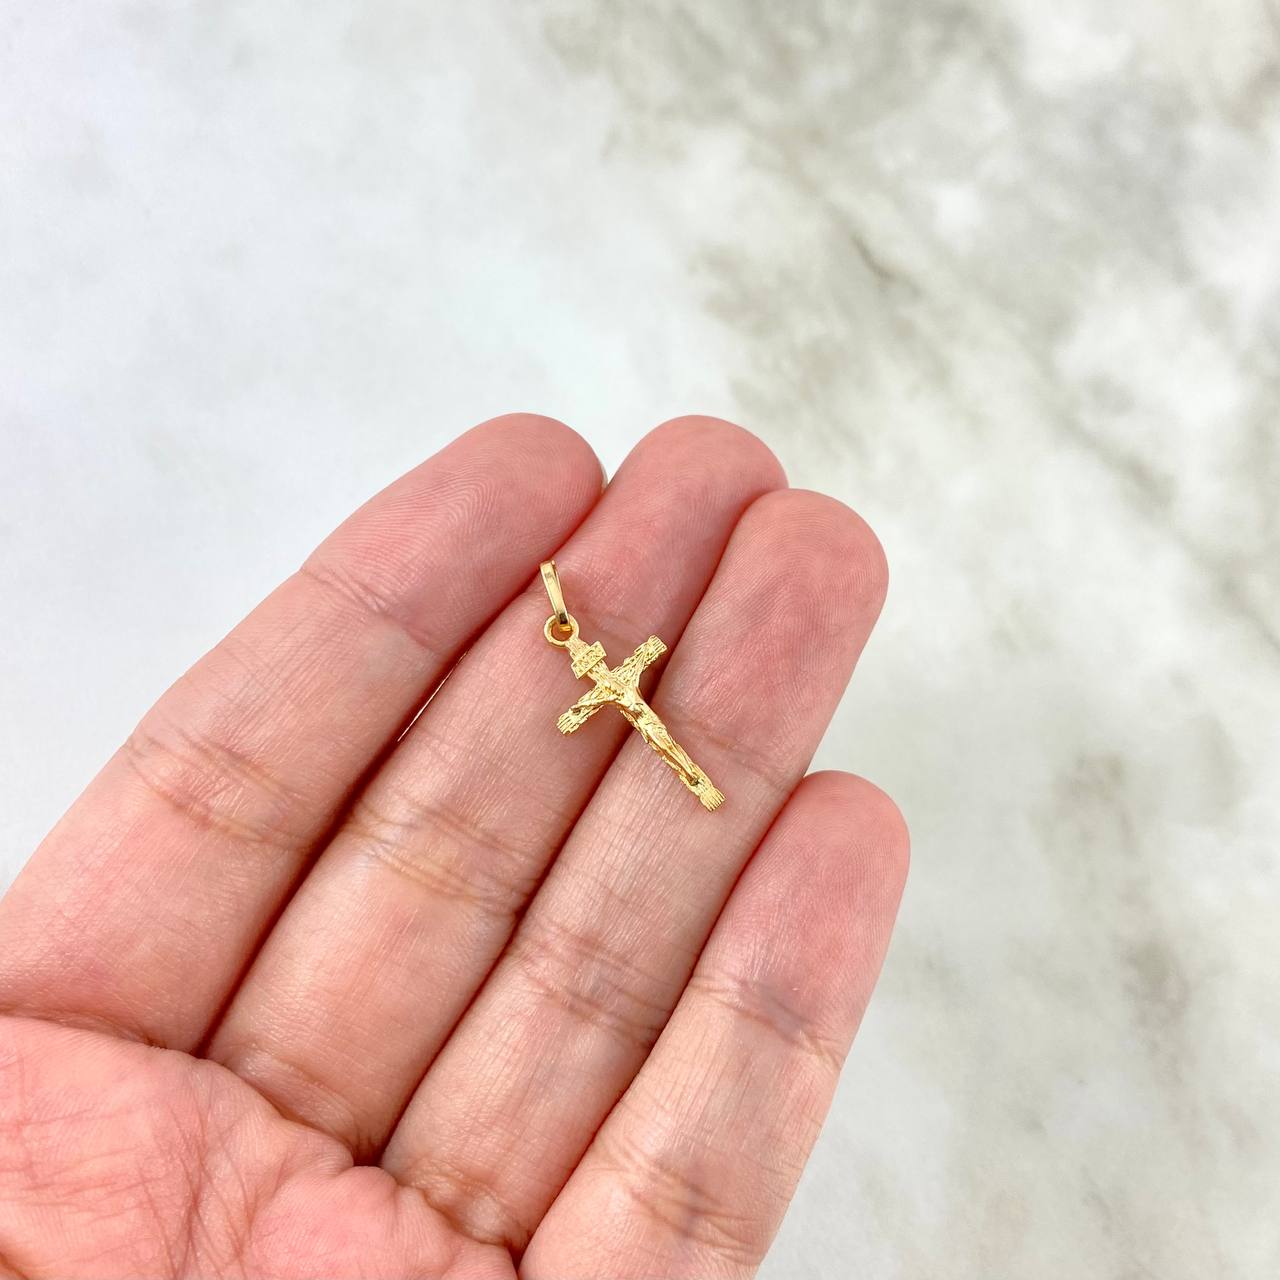 Dije Cruz Cristo 0.9gr / 2.5cm / Madera Oro Amarillo